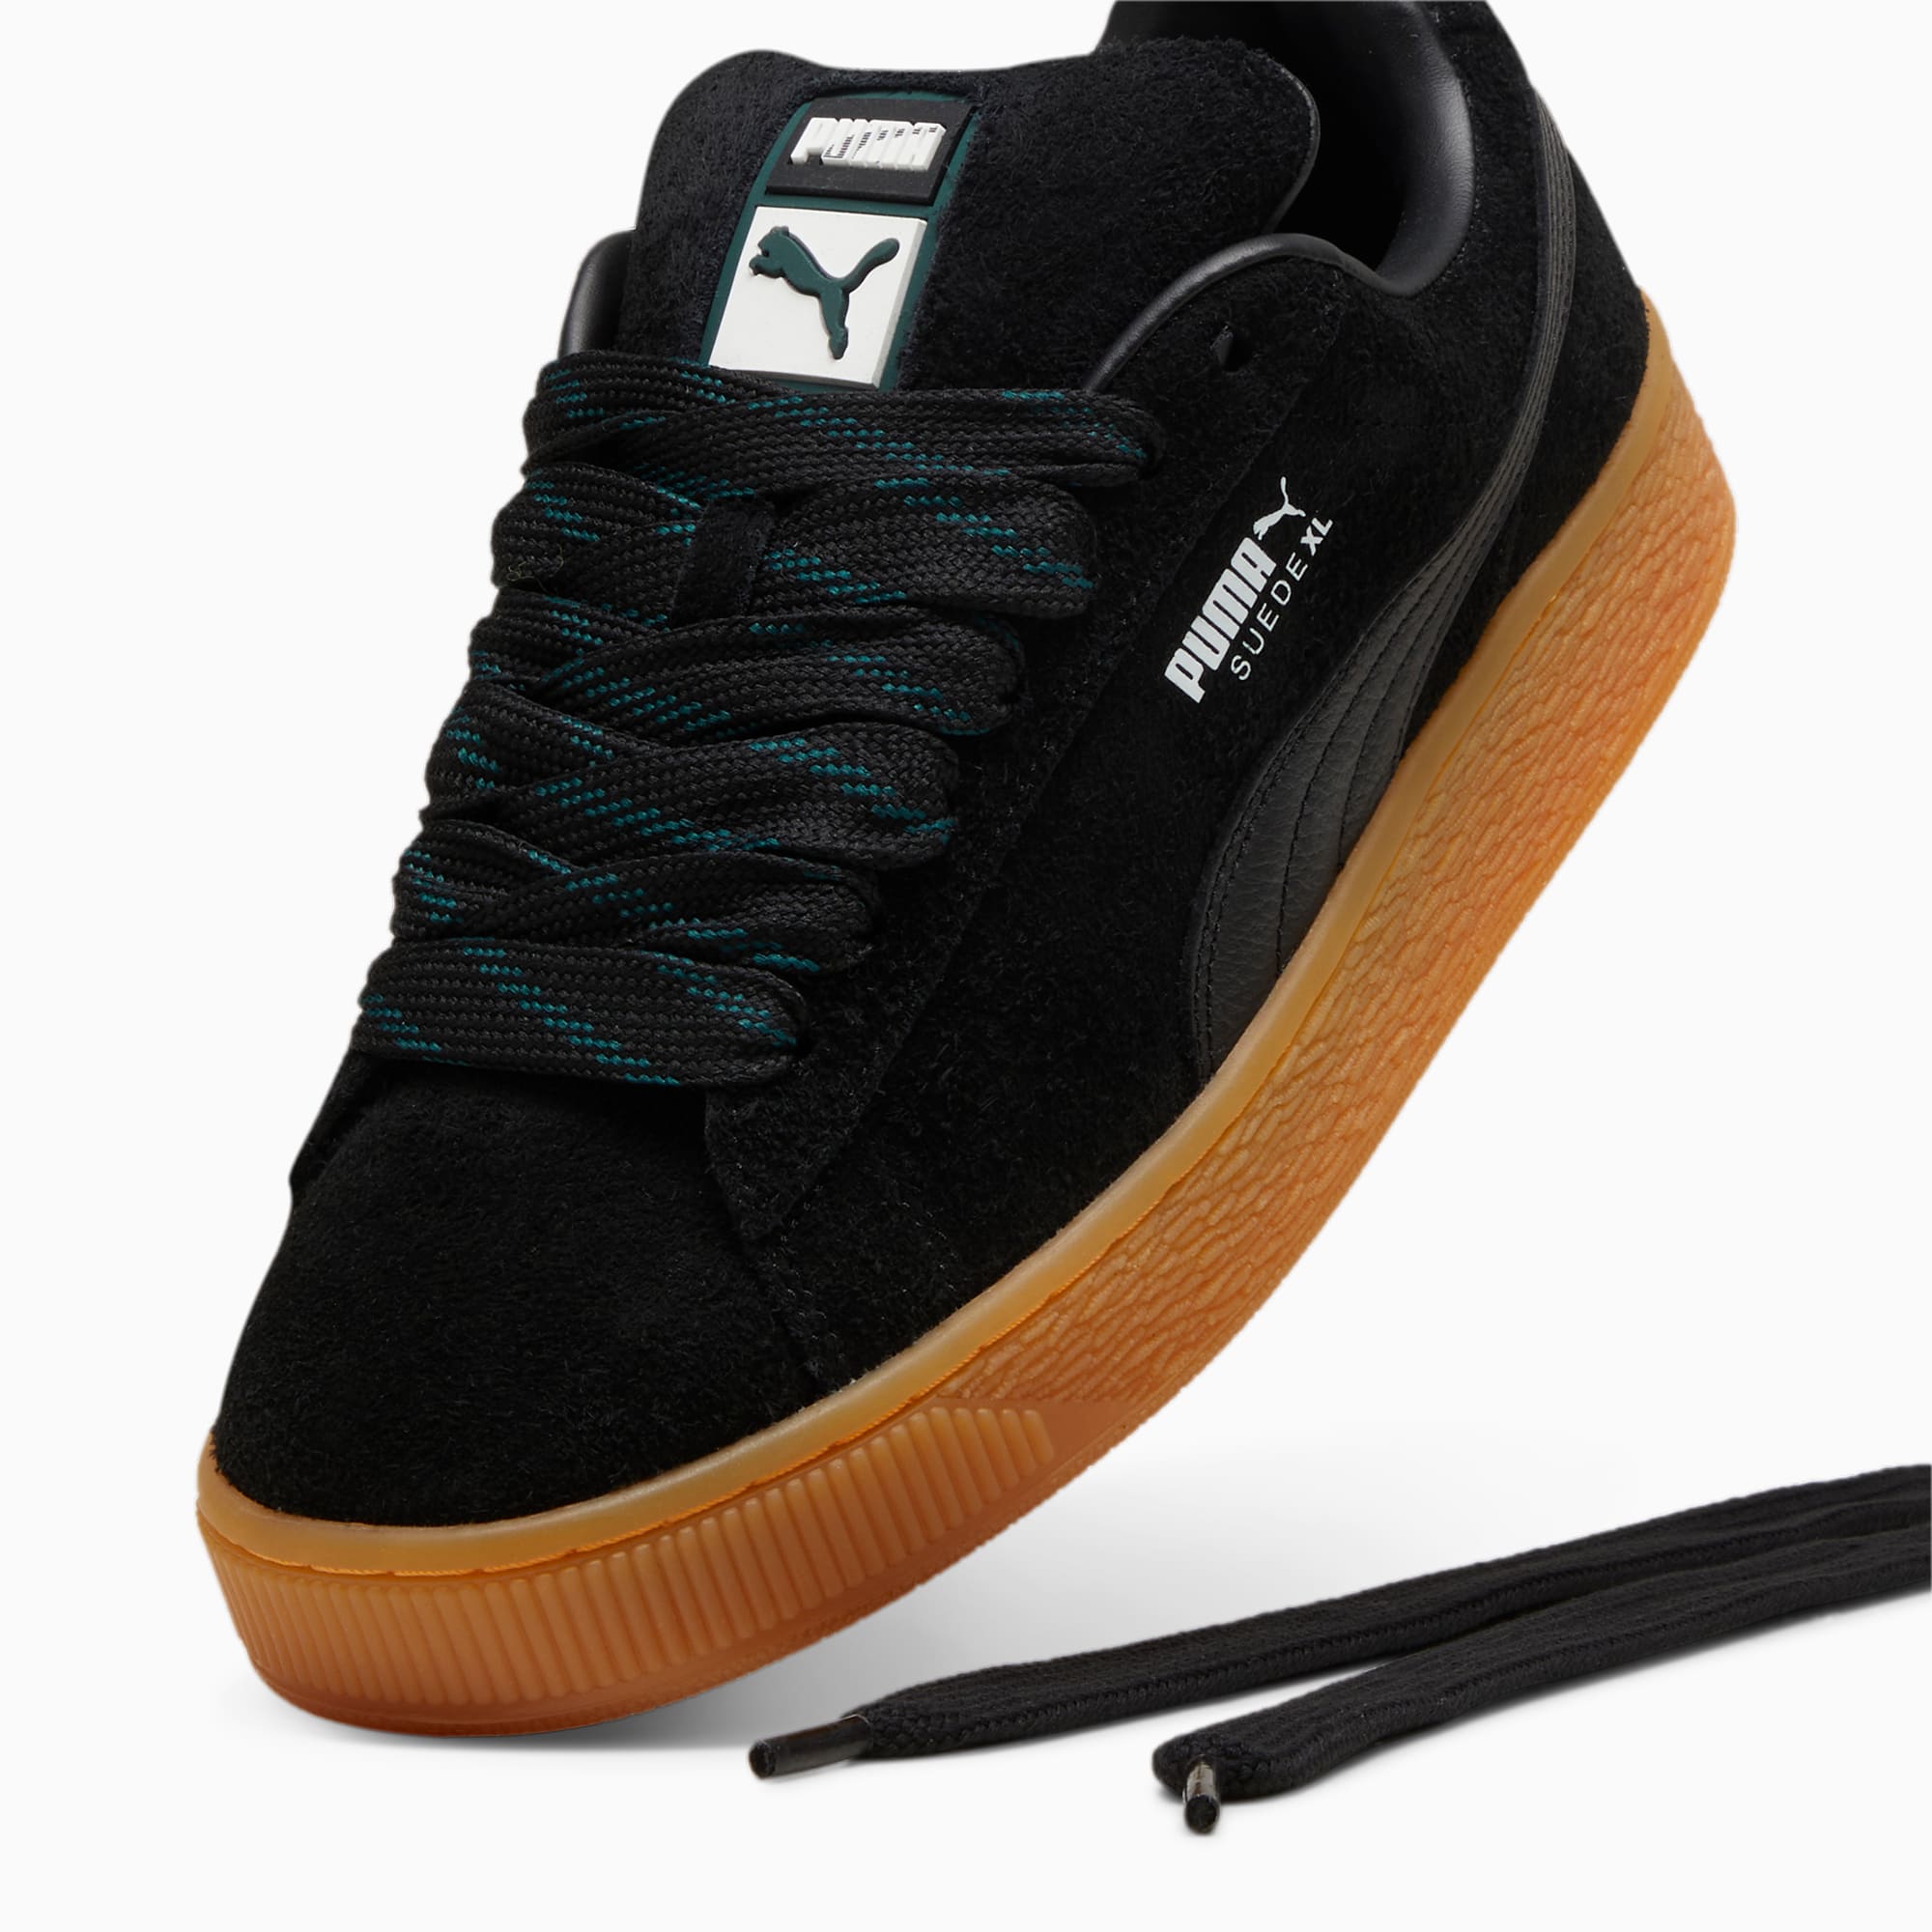 PUMA Suede XL Flecked Sneakers Unisex Schuhe, Schwarz/Grün, Größe: 35.5, Schuhe